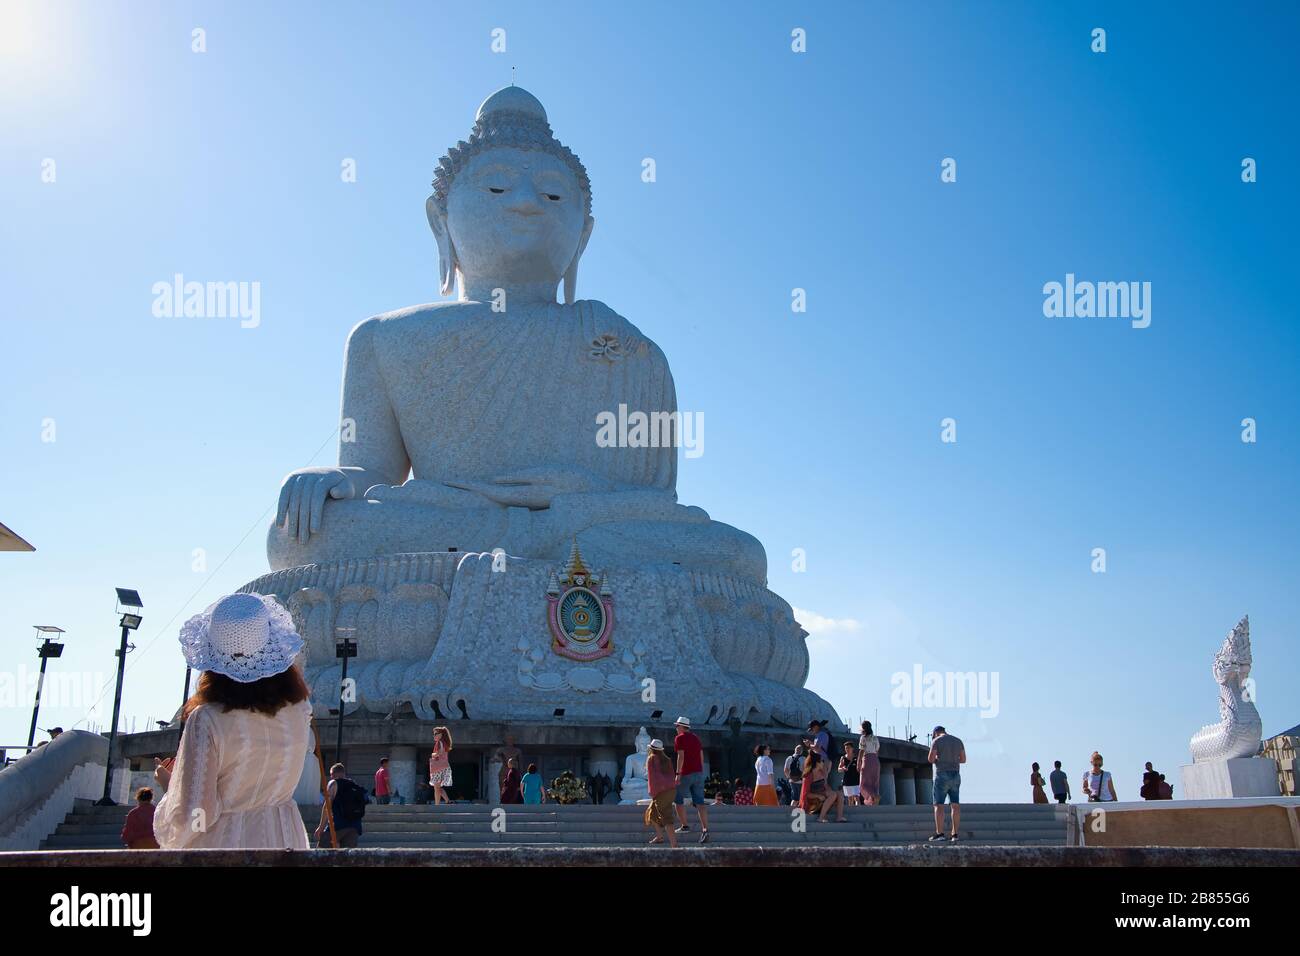 Großes Buddha-Denkmal auf der Insel Phuket, Thailand. Phuket Big Buddha ist eines der wichtigsten und verehrten Wahrzeichen auf der Insel Phuket. Stockfoto